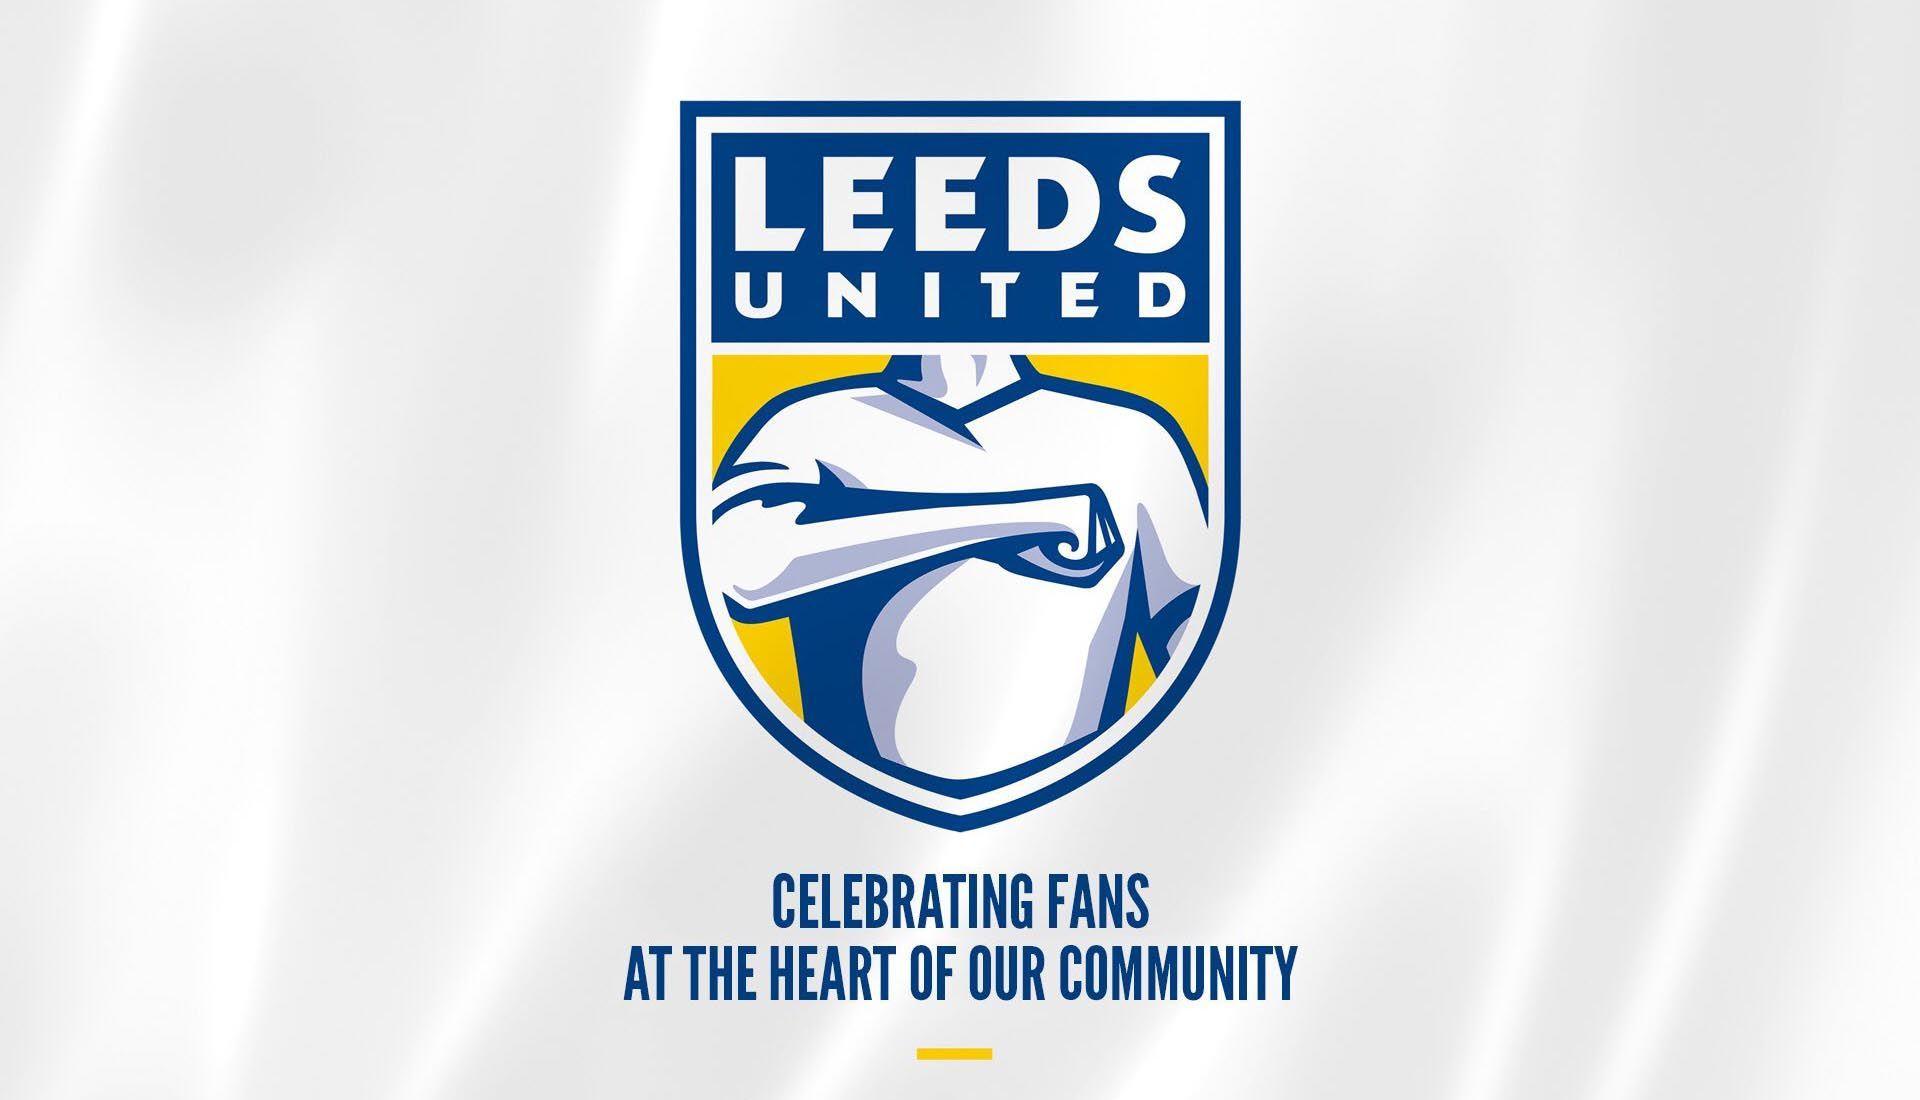 Leeds Logo - Leeds United unveils new logo